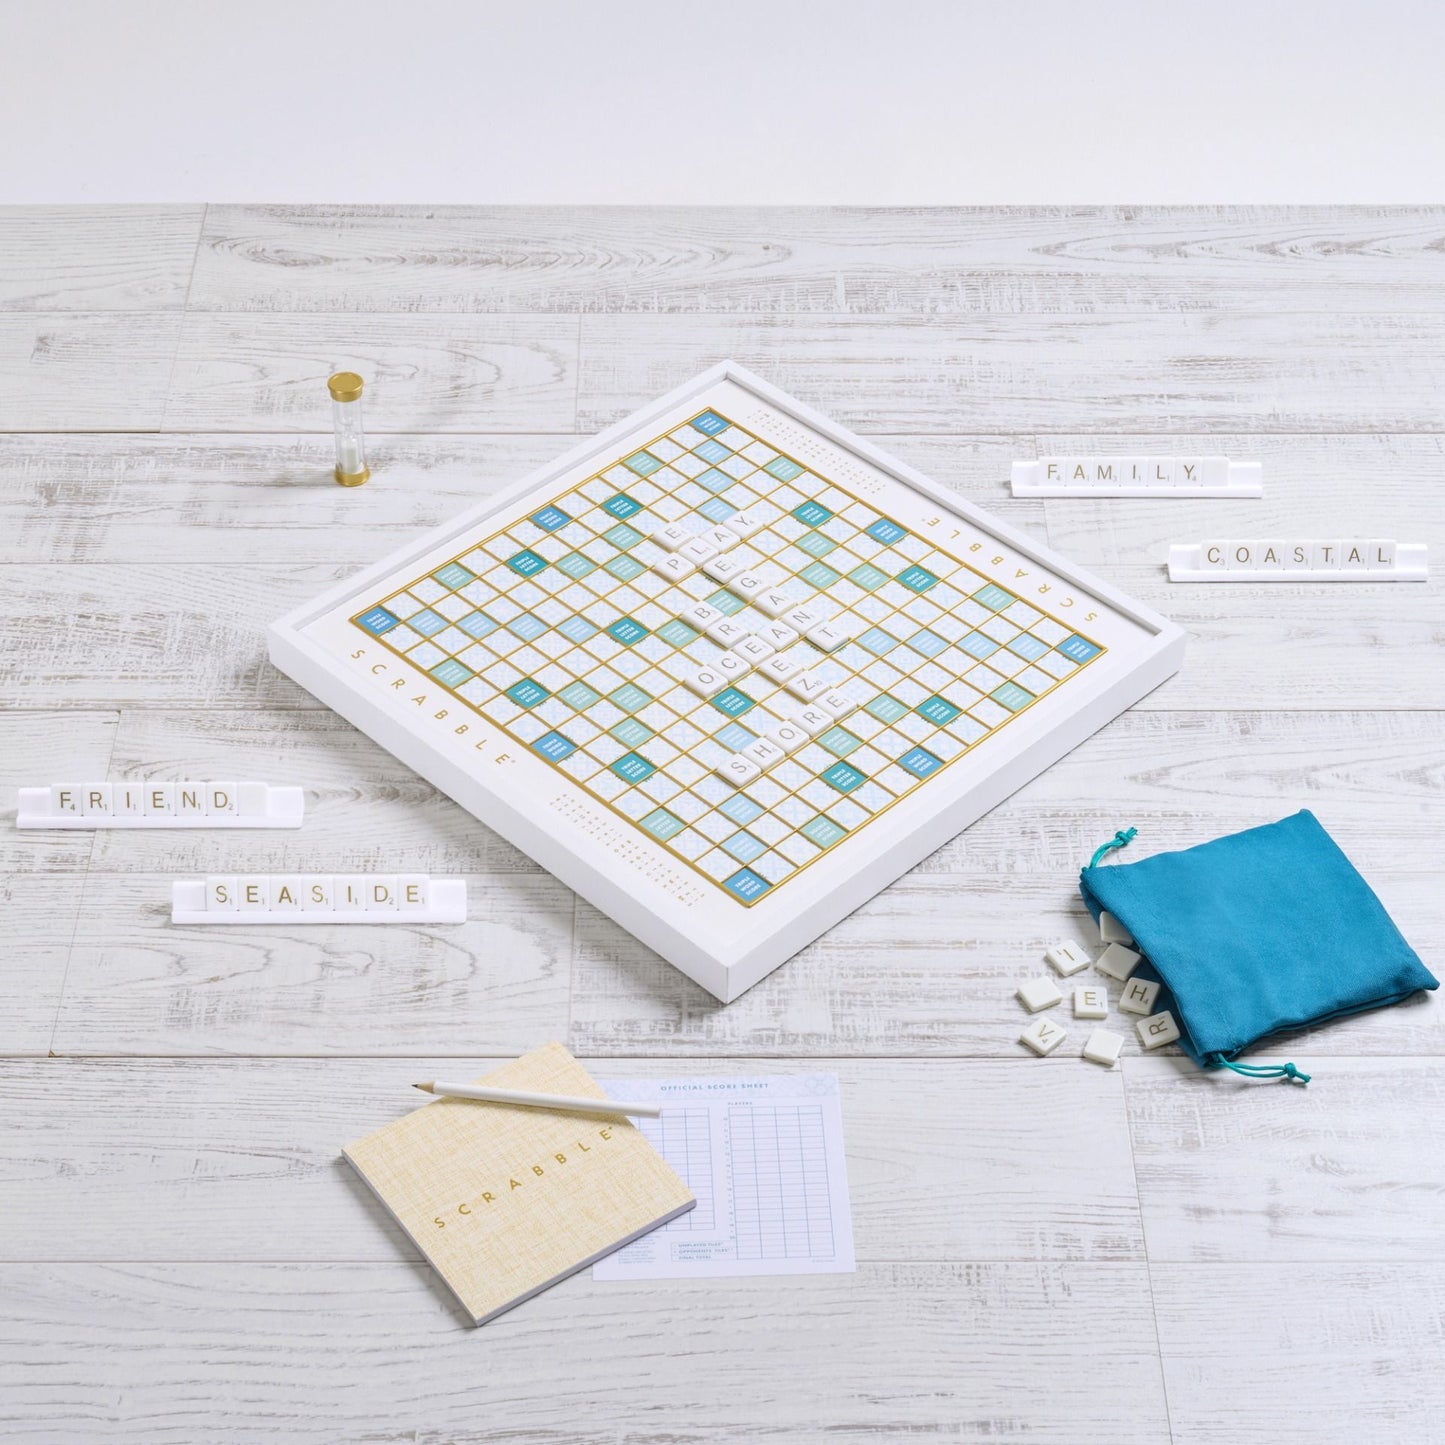 Scrabble Bianco Edition